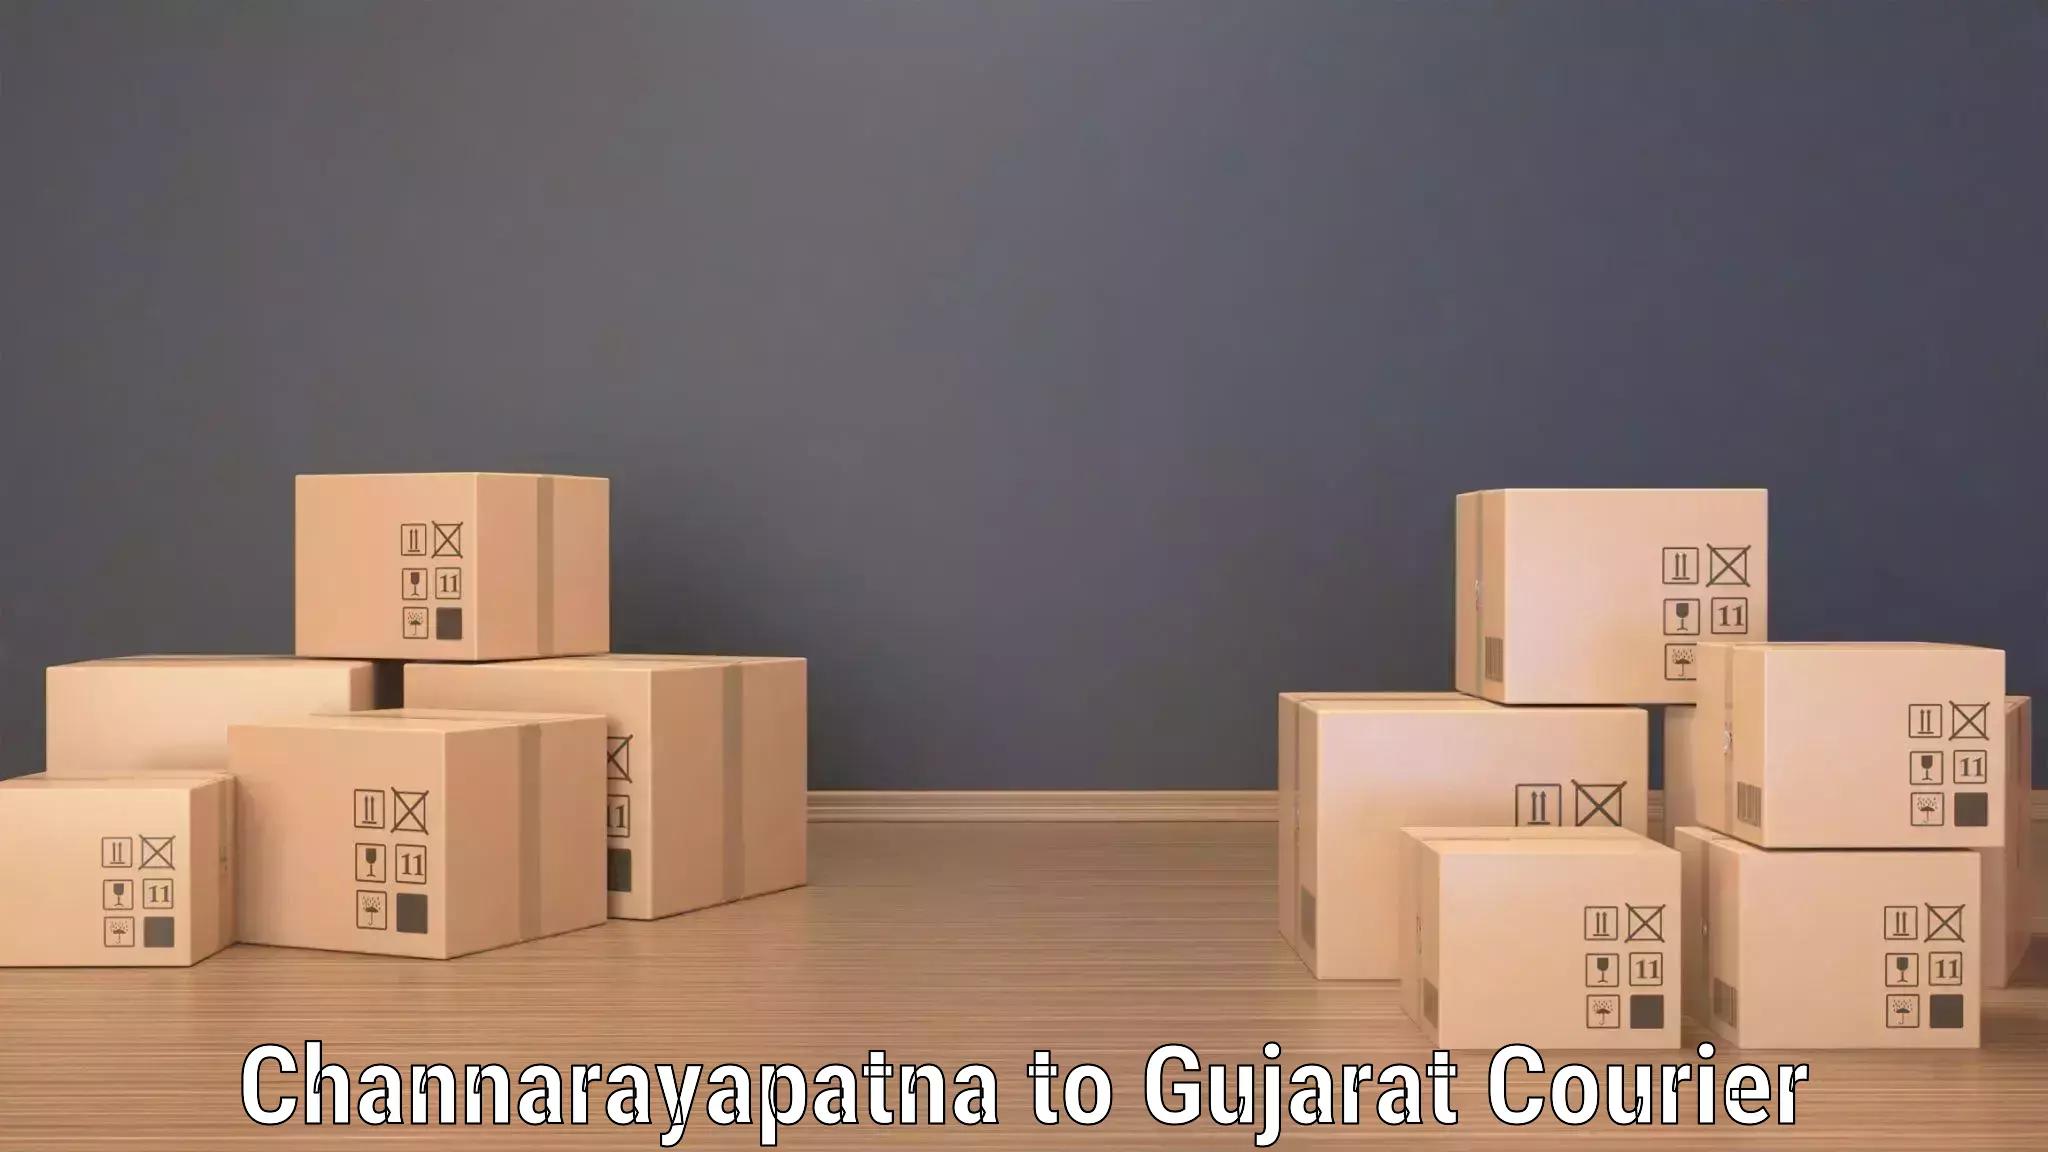 Courier service booking Channarayapatna to Dhasa